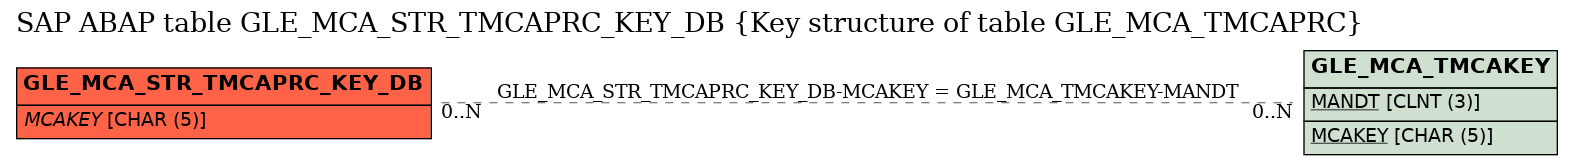 E-R Diagram for table GLE_MCA_STR_TMCAPRC_KEY_DB (Key structure of table GLE_MCA_TMCAPRC)